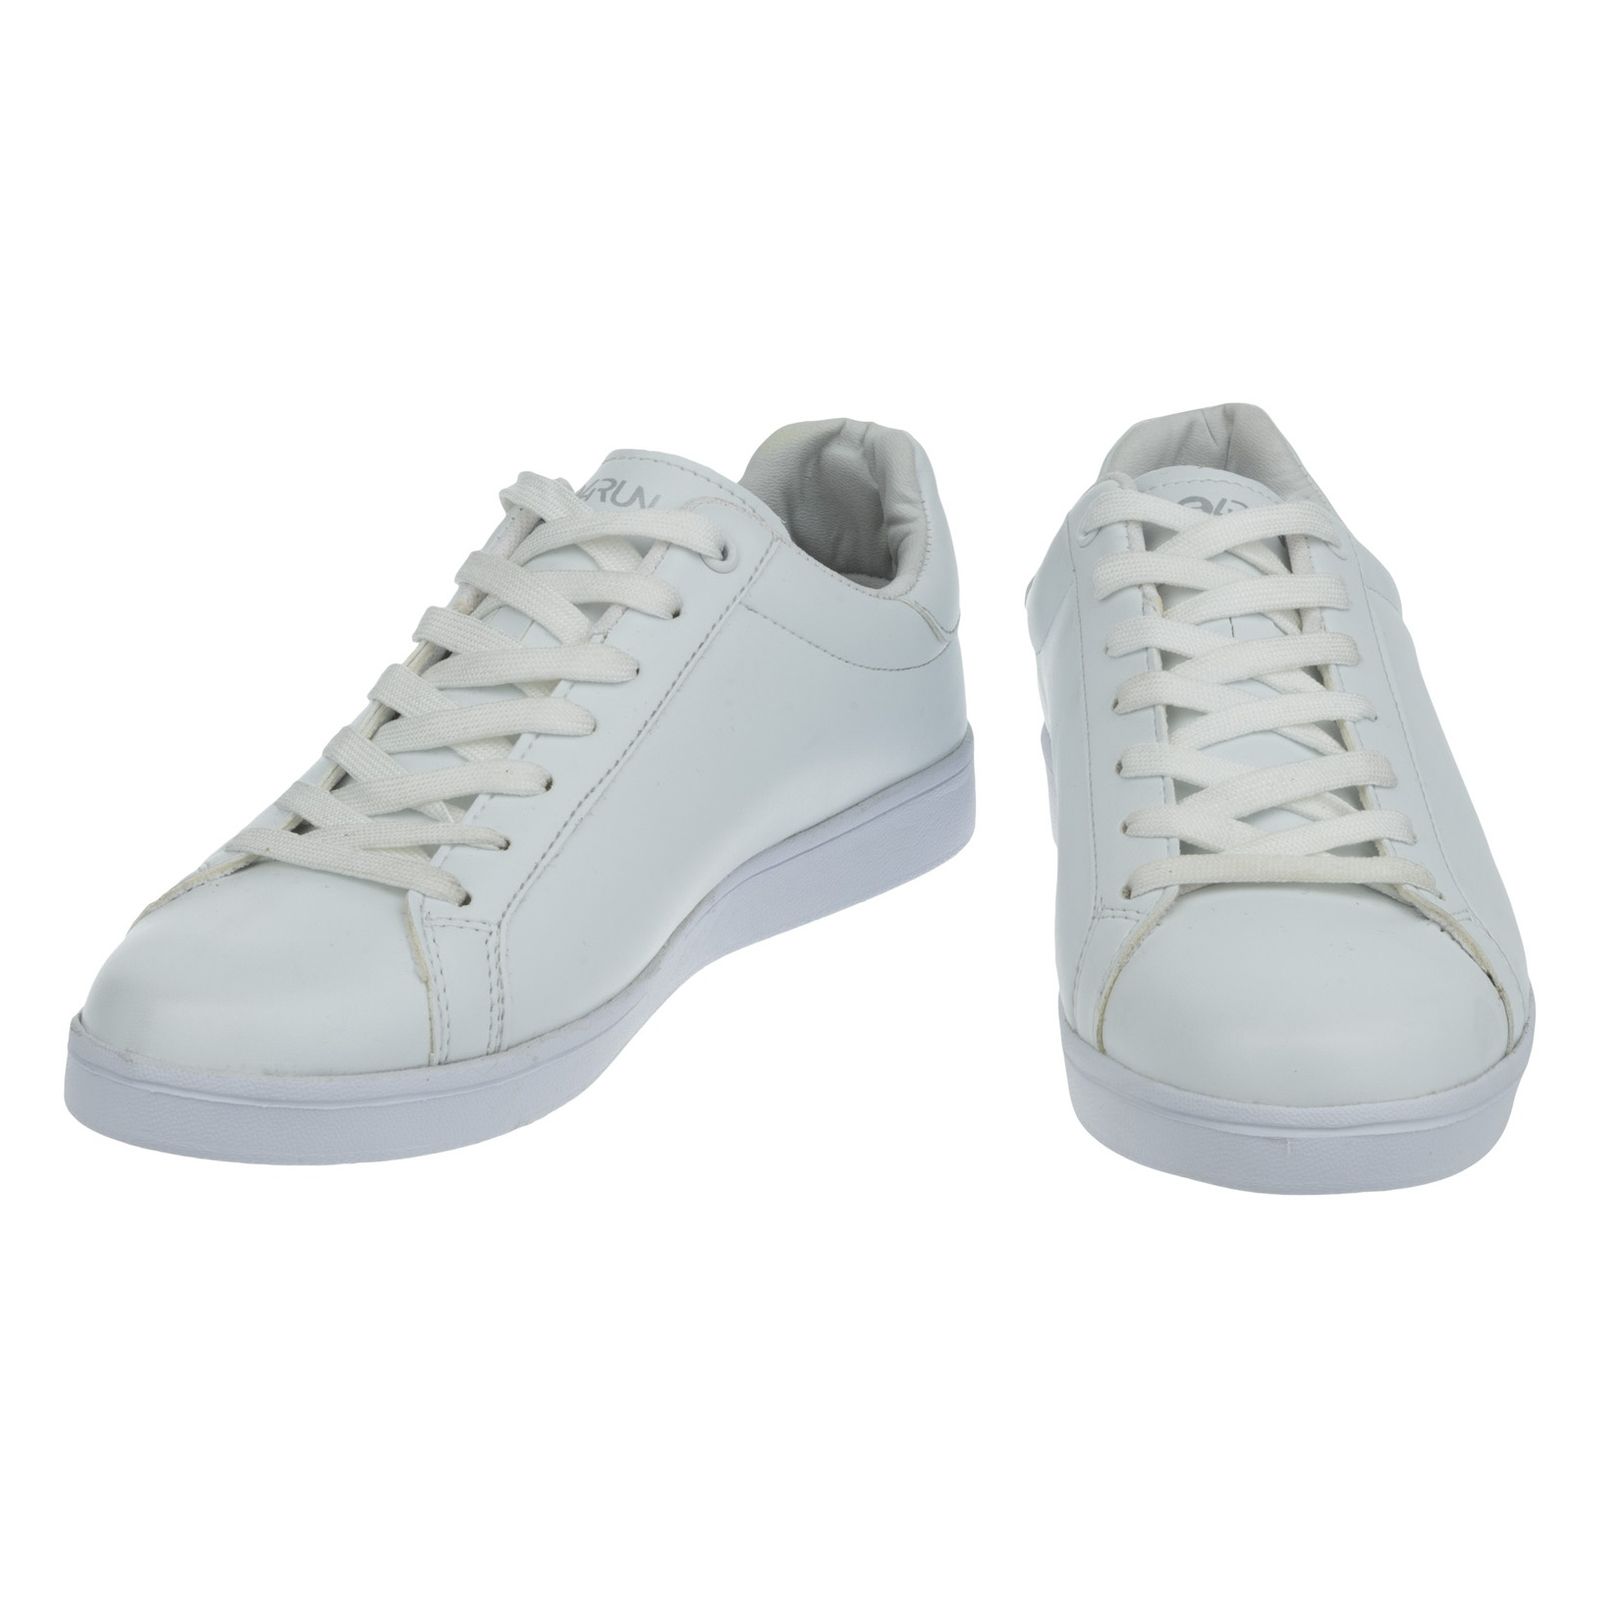 کفش ورزشی زنانه بی فور ران مدل 981121-01 - سفید - 6